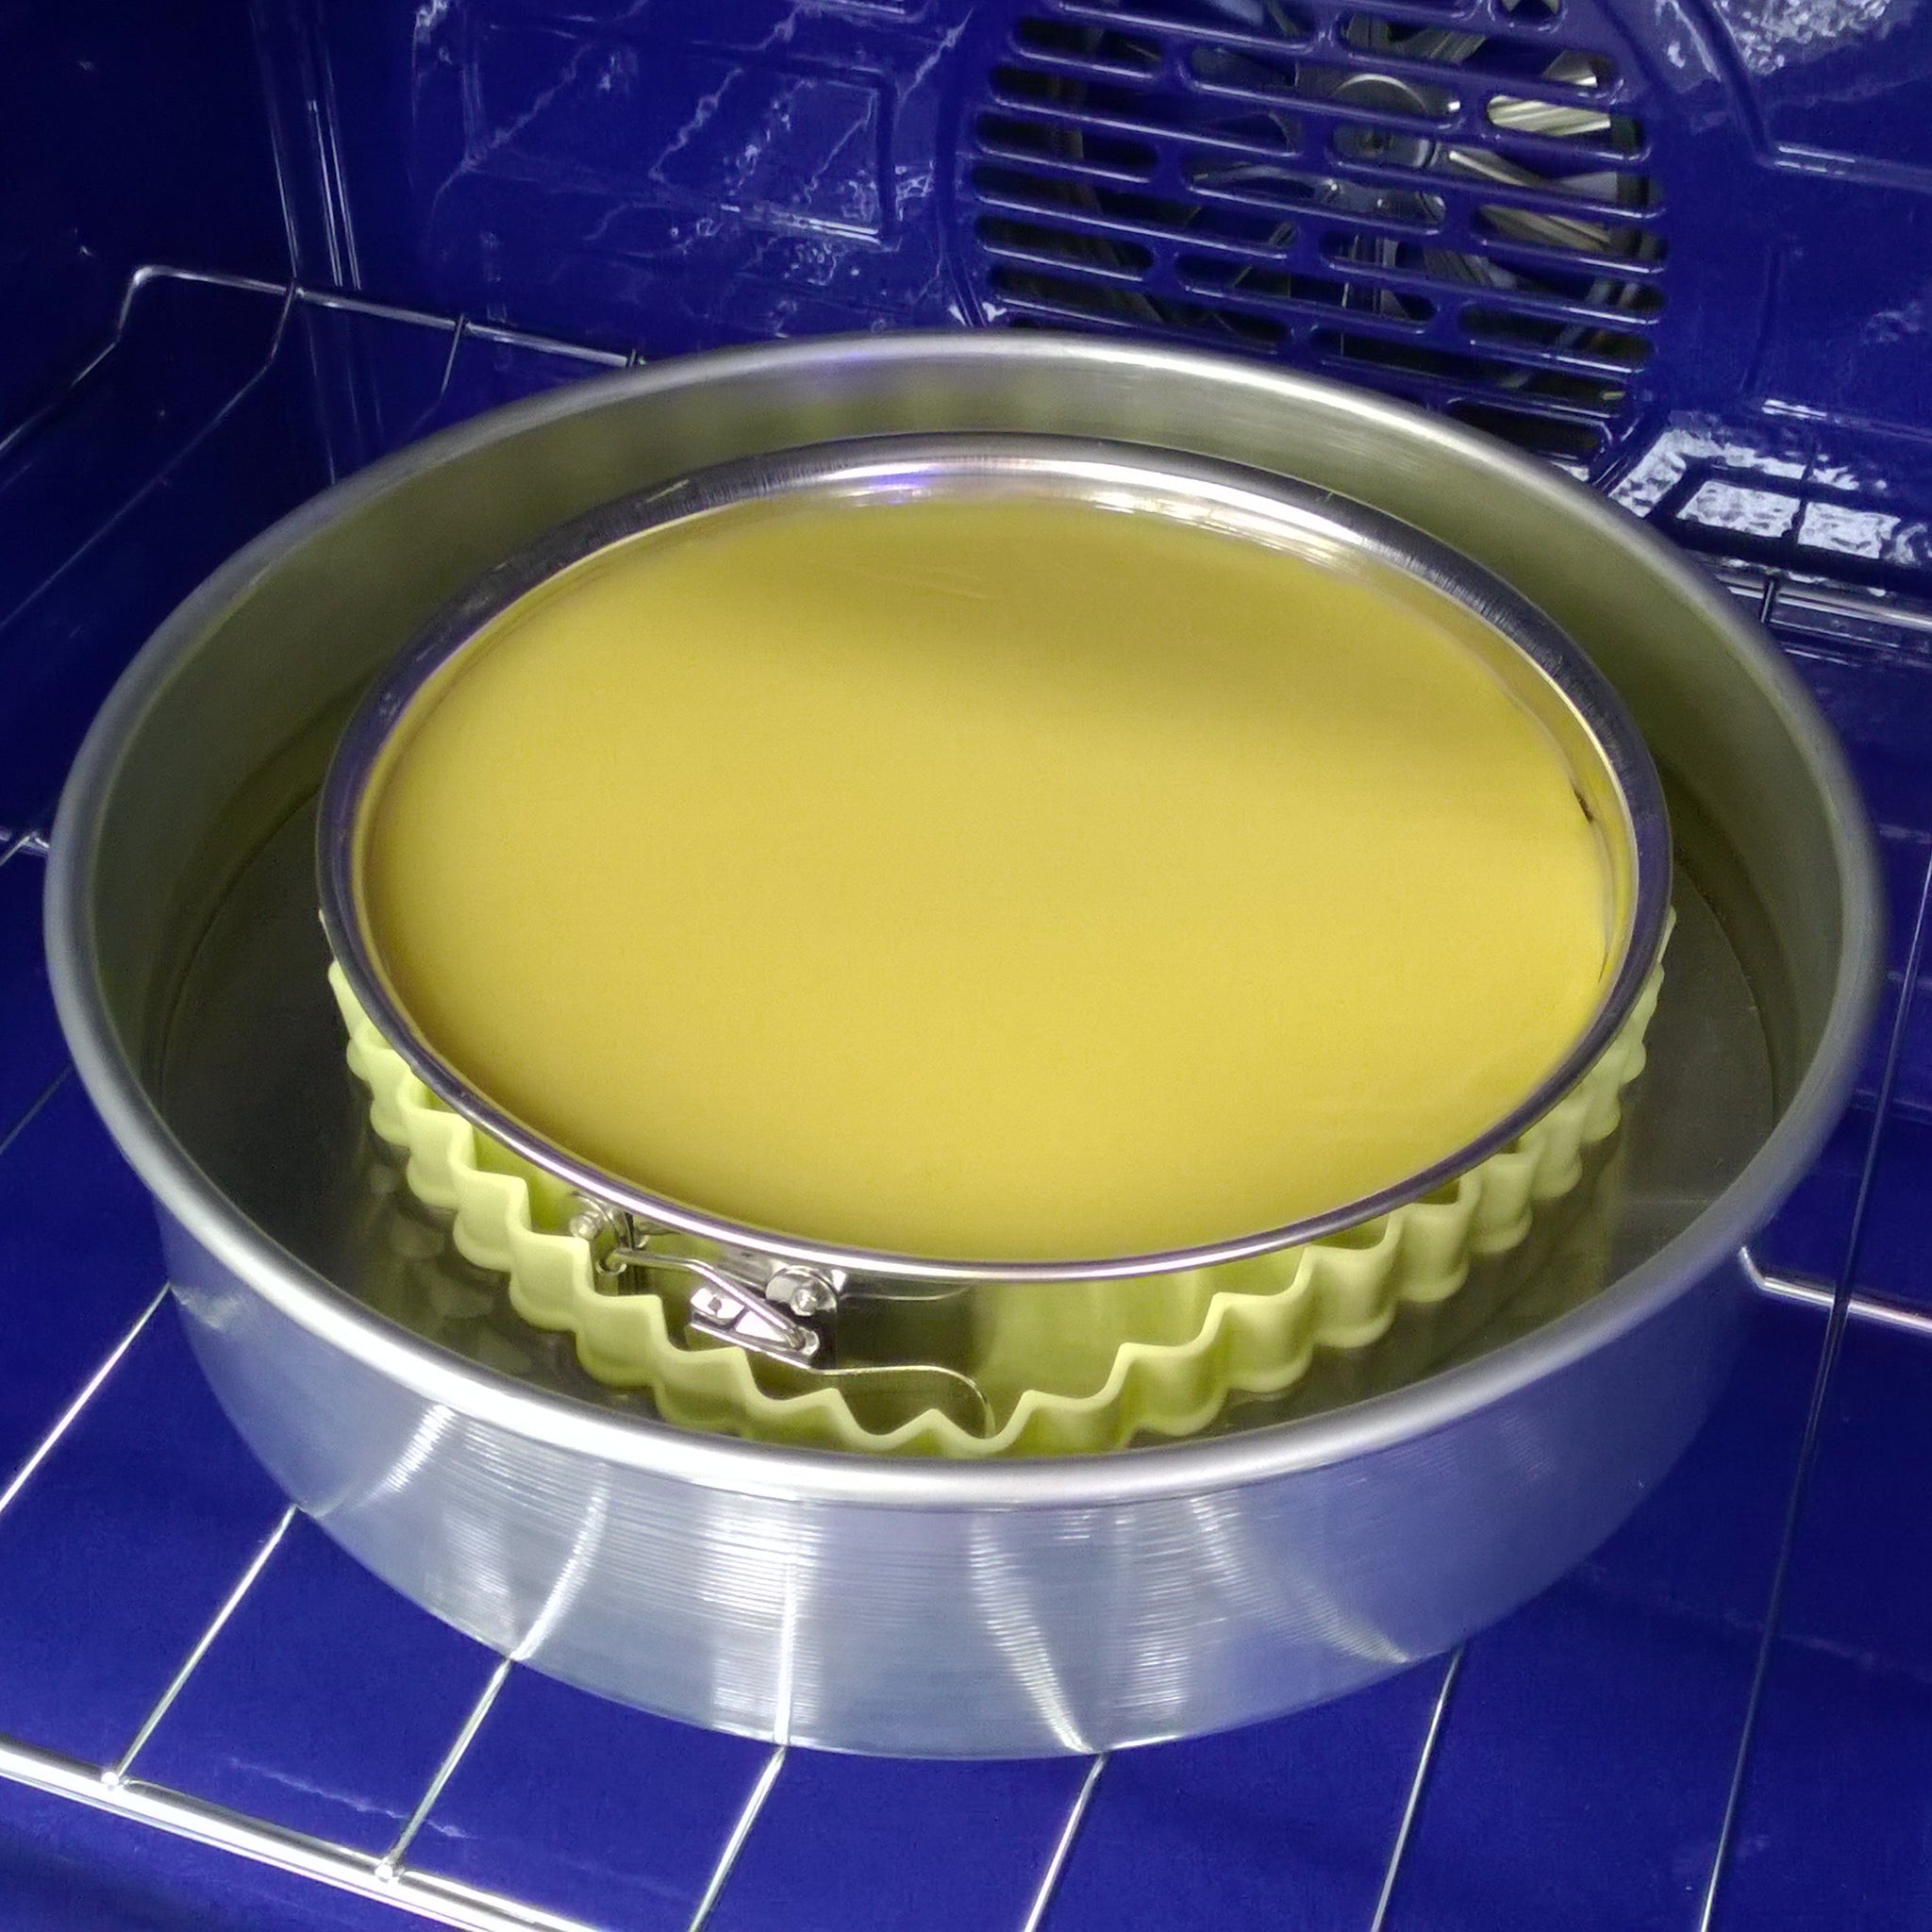 9 Springform Pan – Easy Bath Cheesecake Wrap